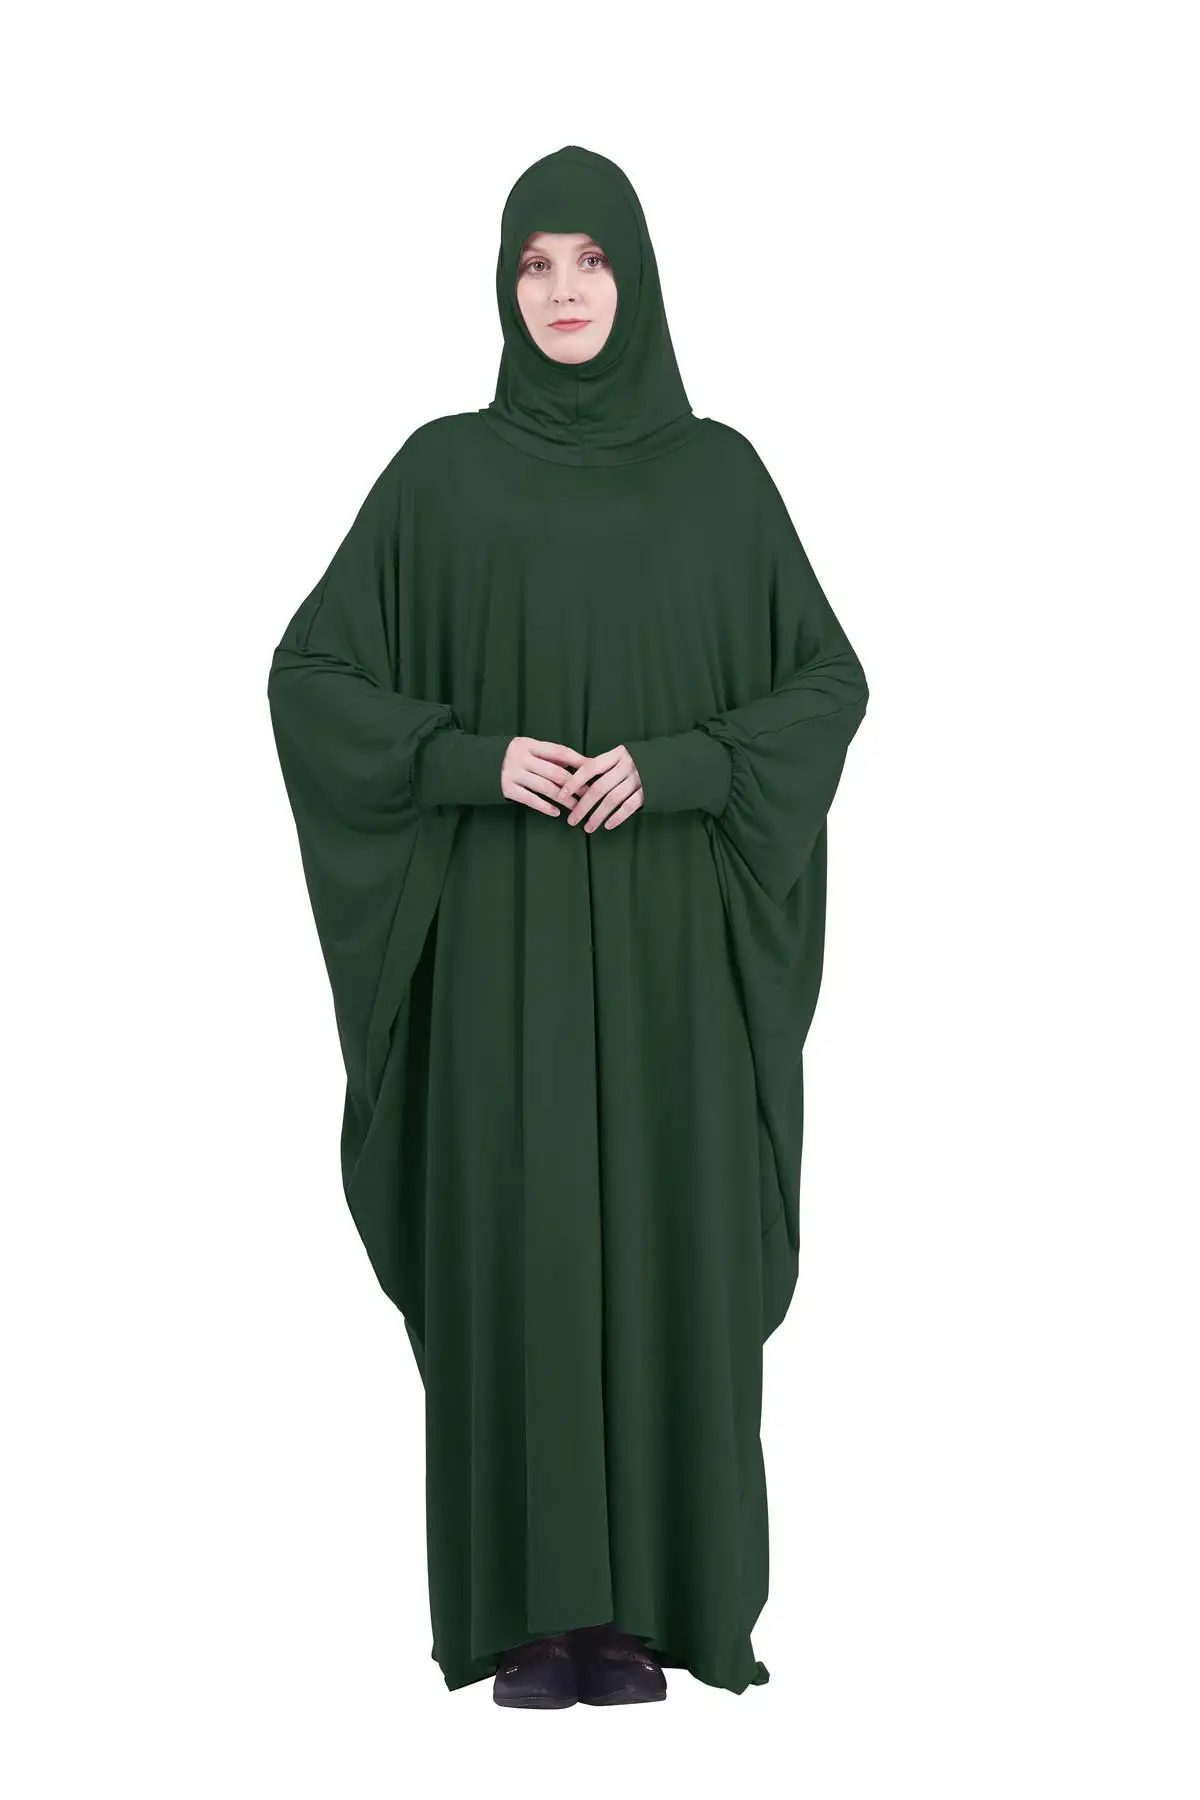 Namaz Elbise Kadın Ramazan İslam Giyim Resmi Müslüman Konfeksiyon Kapşonlu Dubai Türkiye Namaz Uzun Jurken Abaya Başörtüsü Kimono 5